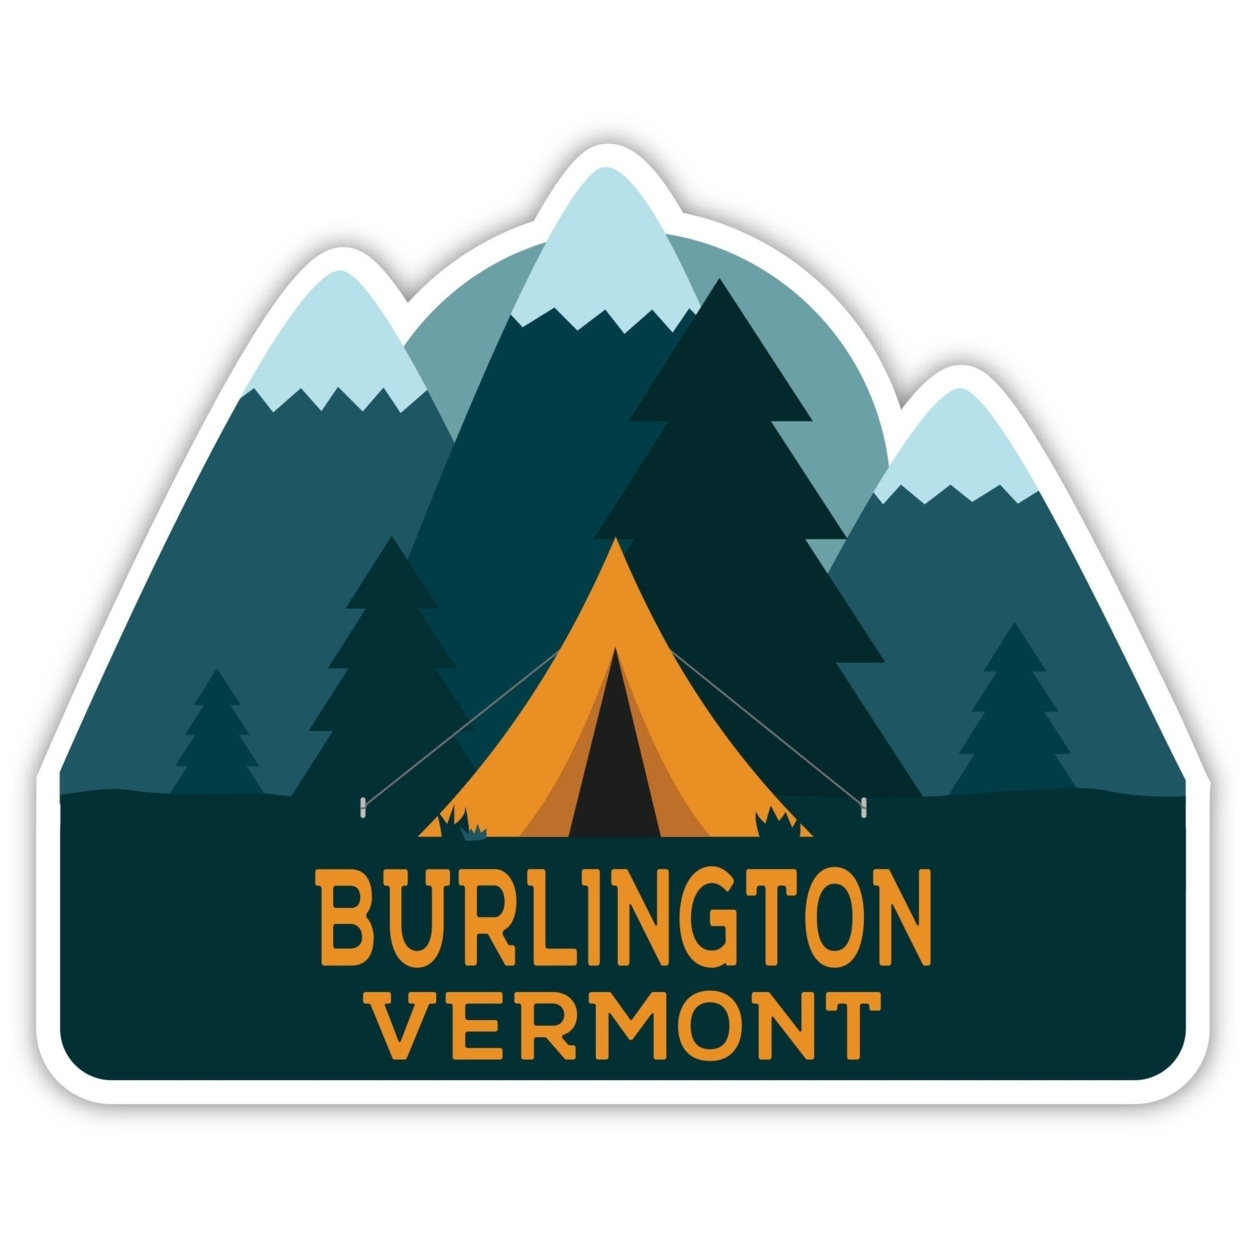 Burlington Vermont Souvenir Decorative Stickers (Choose Theme And Size) - 4-Pack, 2-Inch, Bear